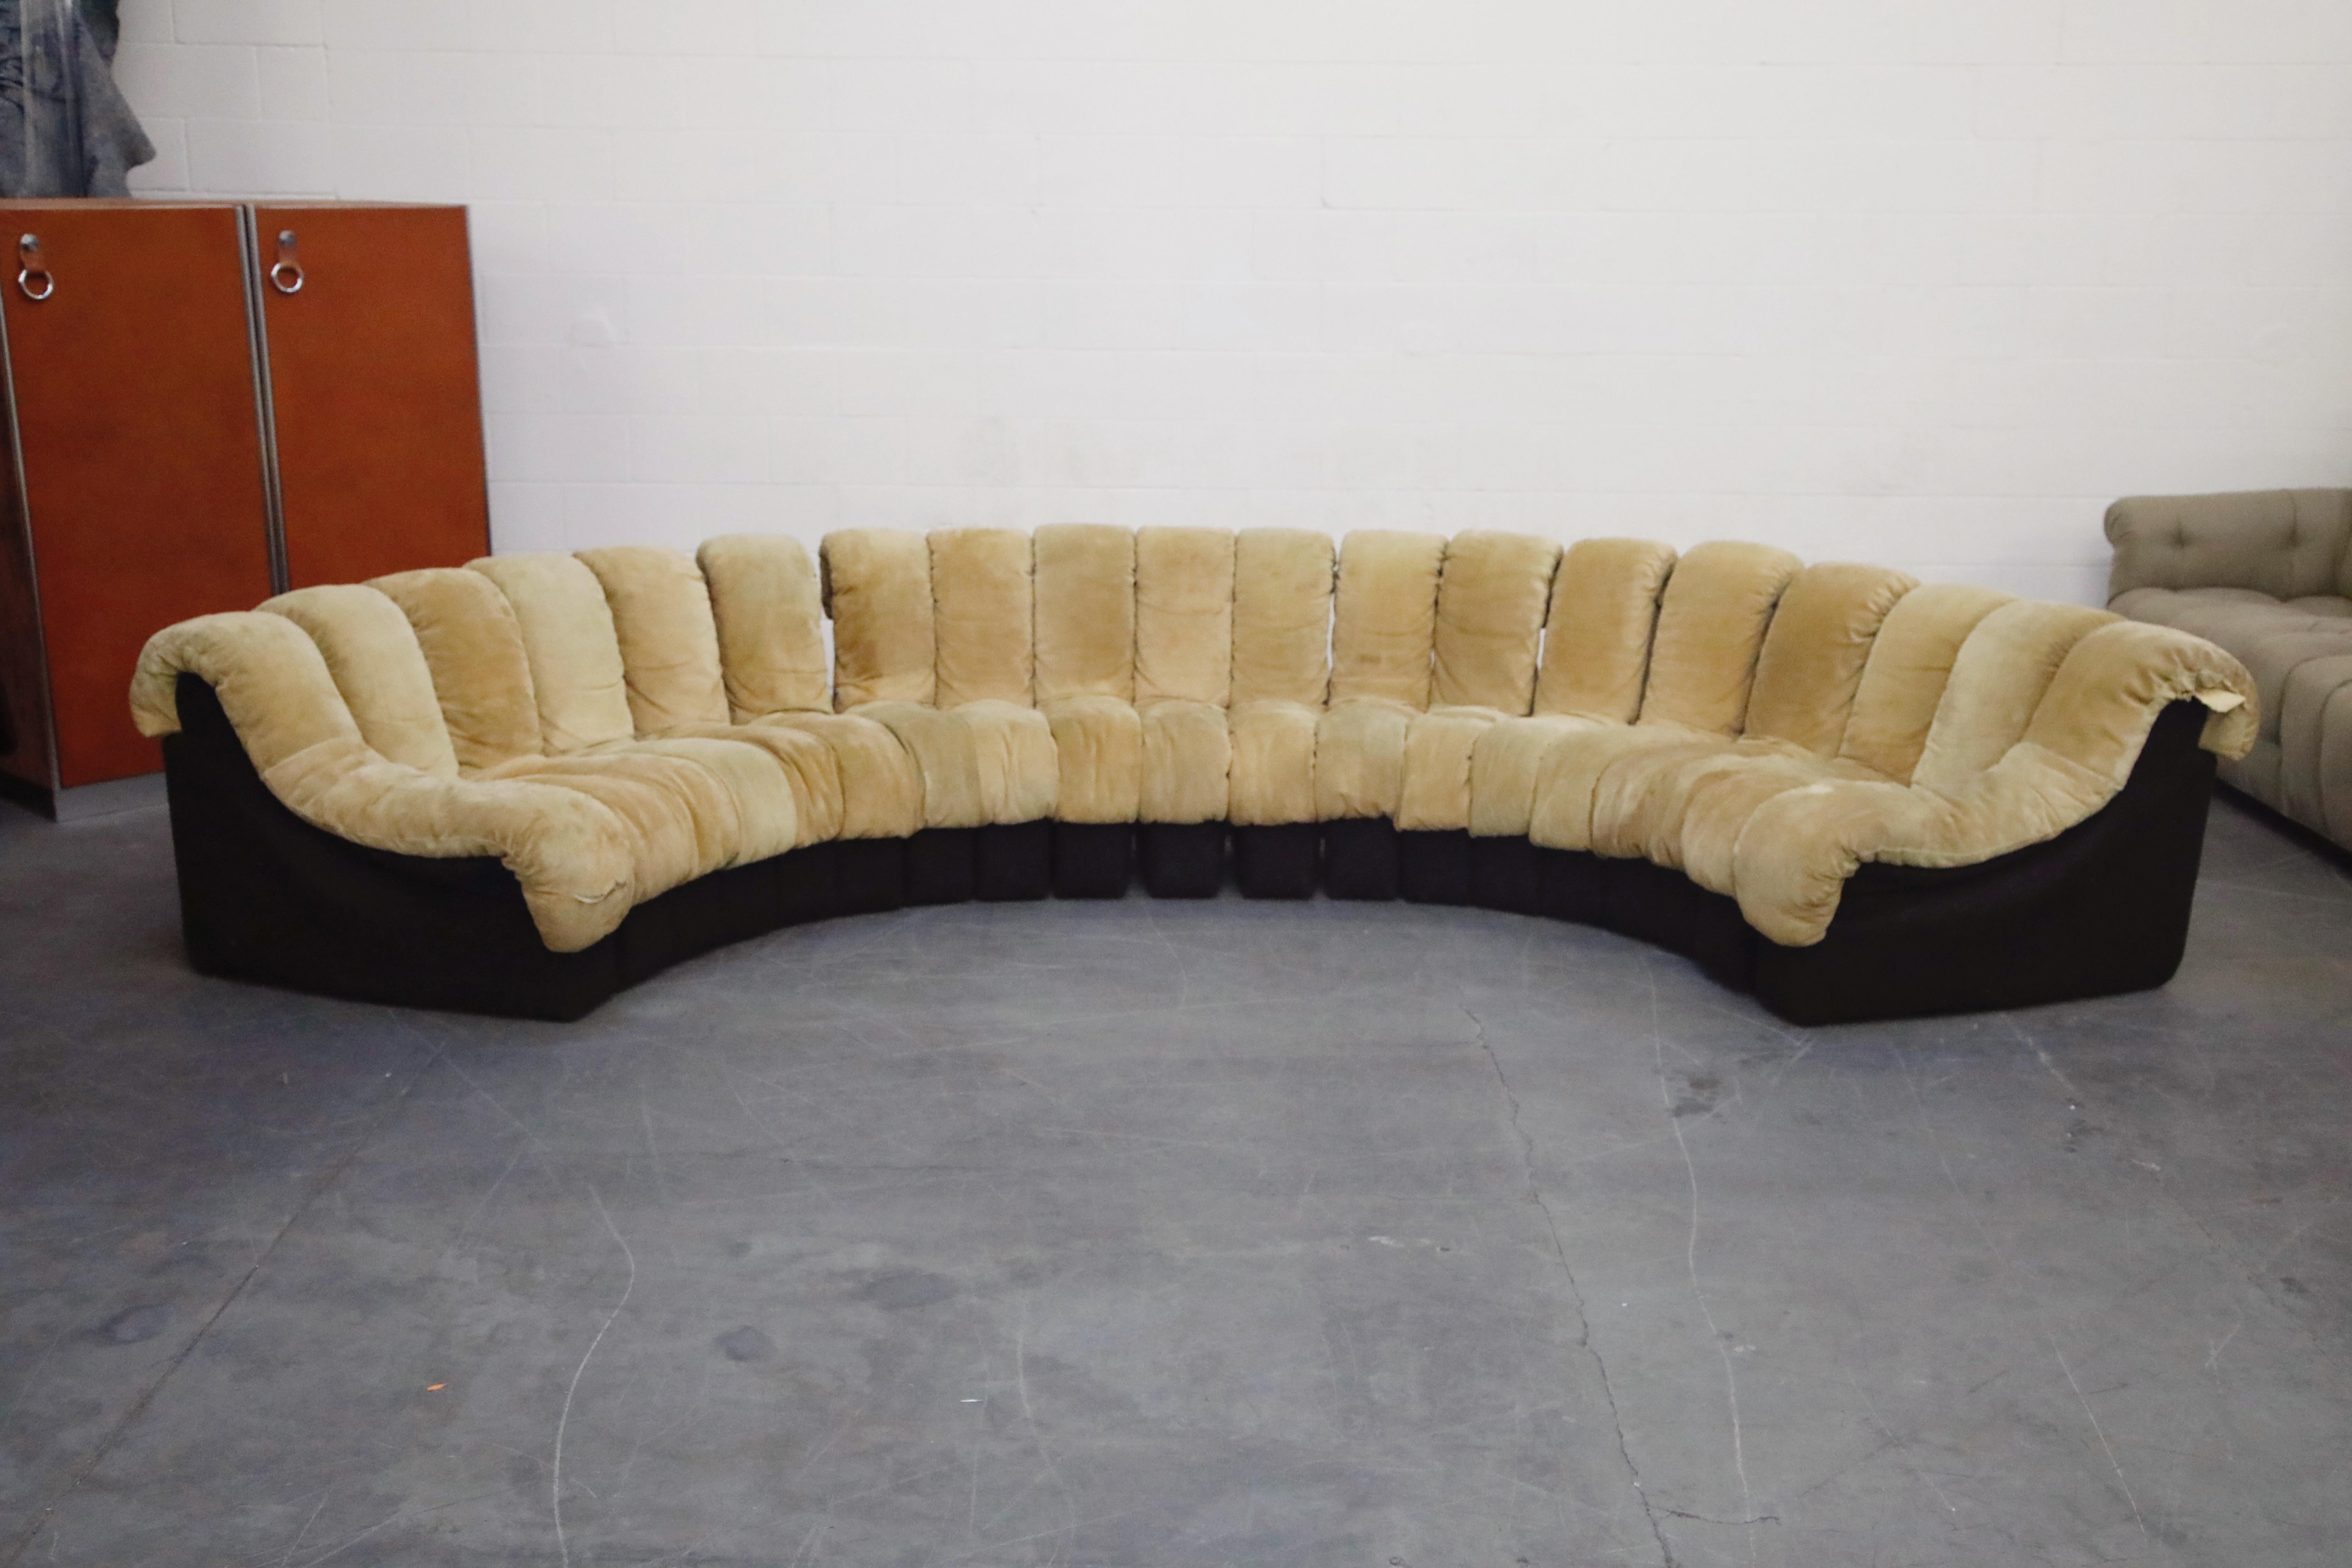 centipede sofa